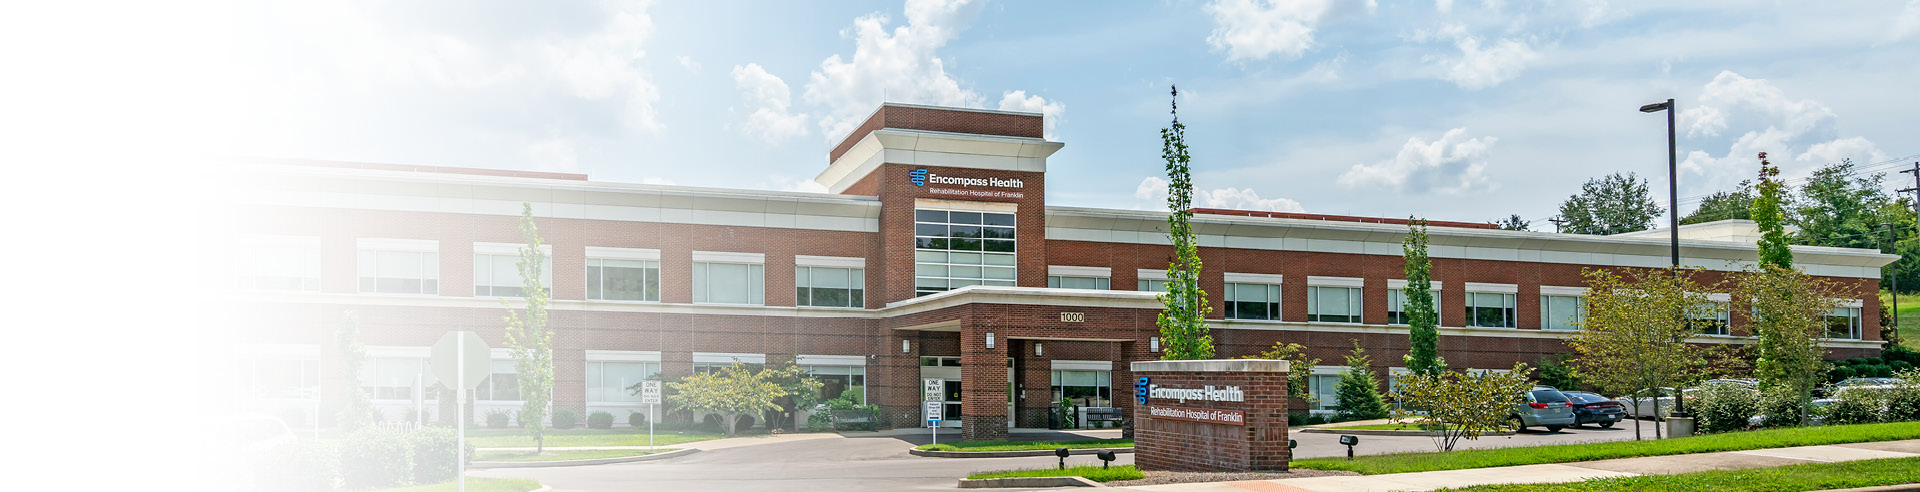 Encompass Health Rehabilitation Hospital of Franklin exterior